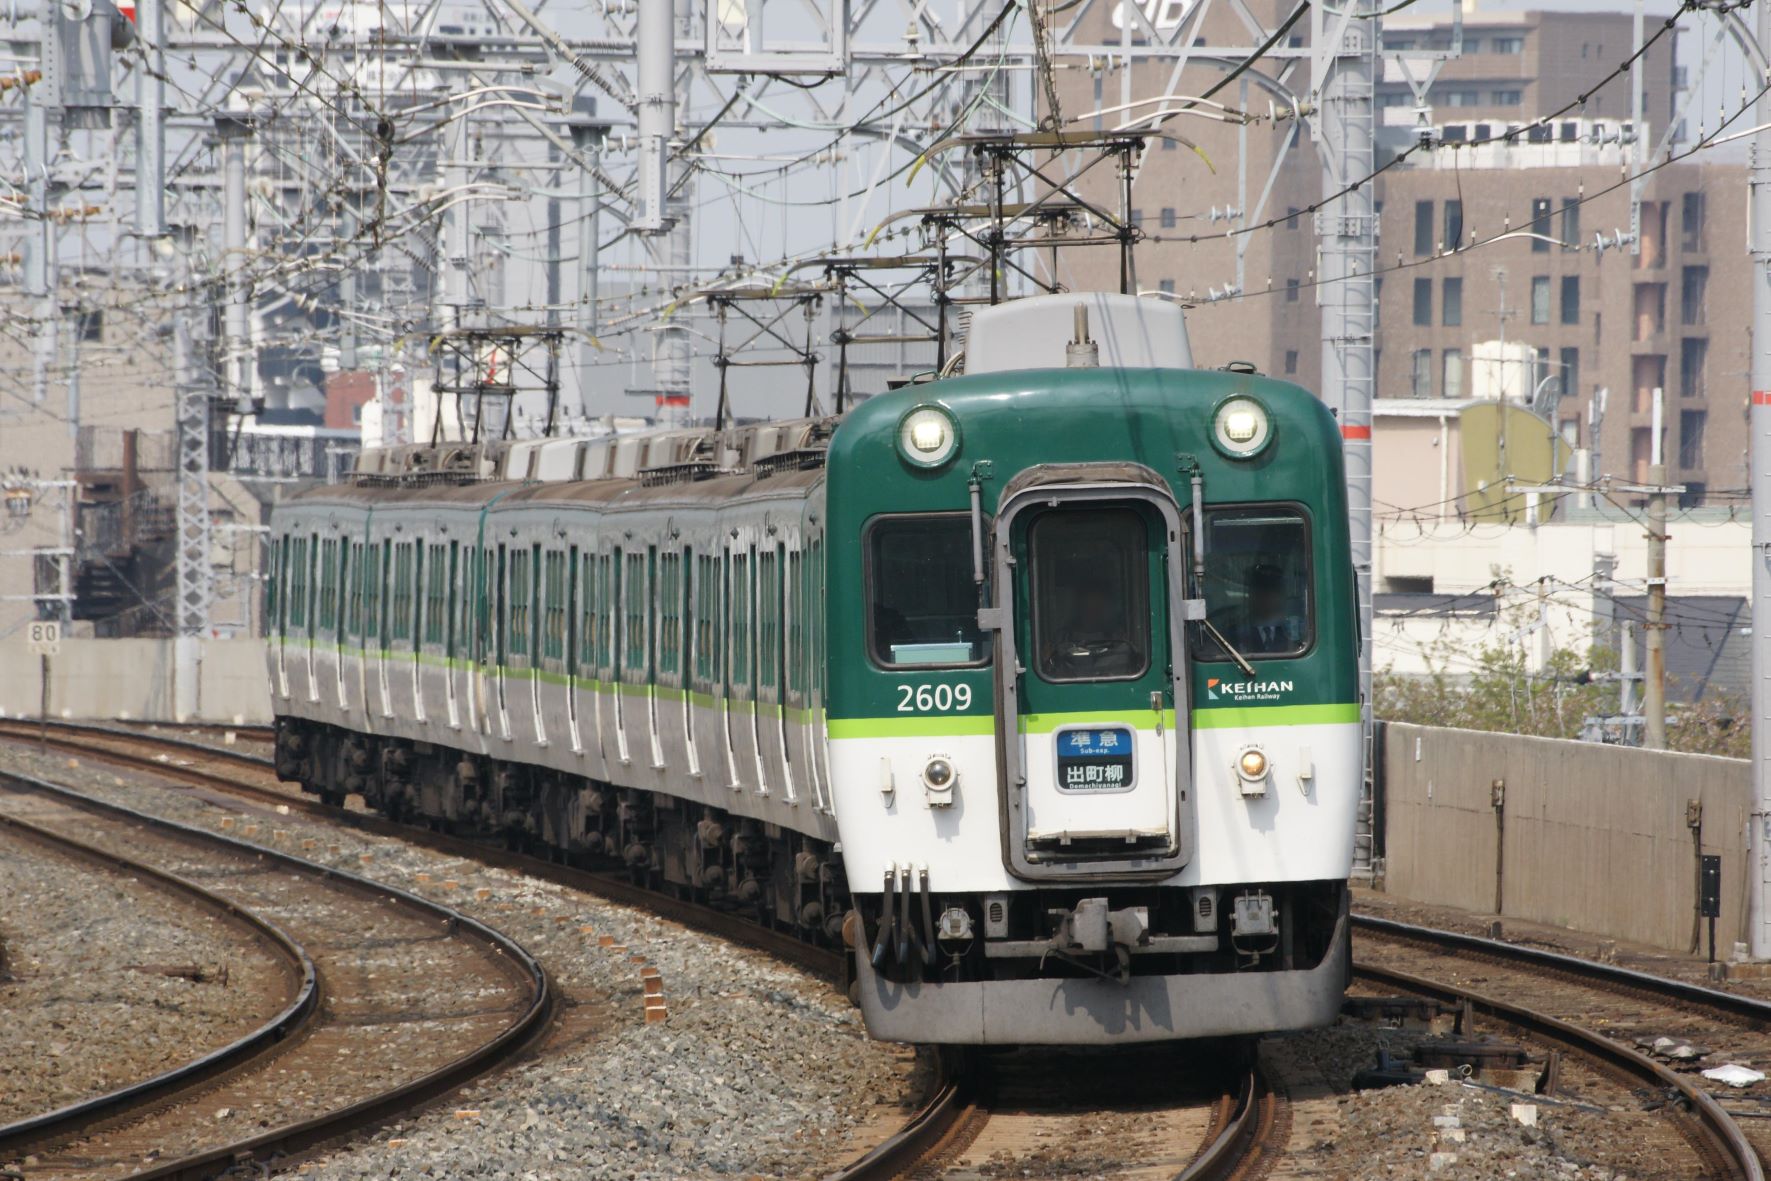 京阪2600系